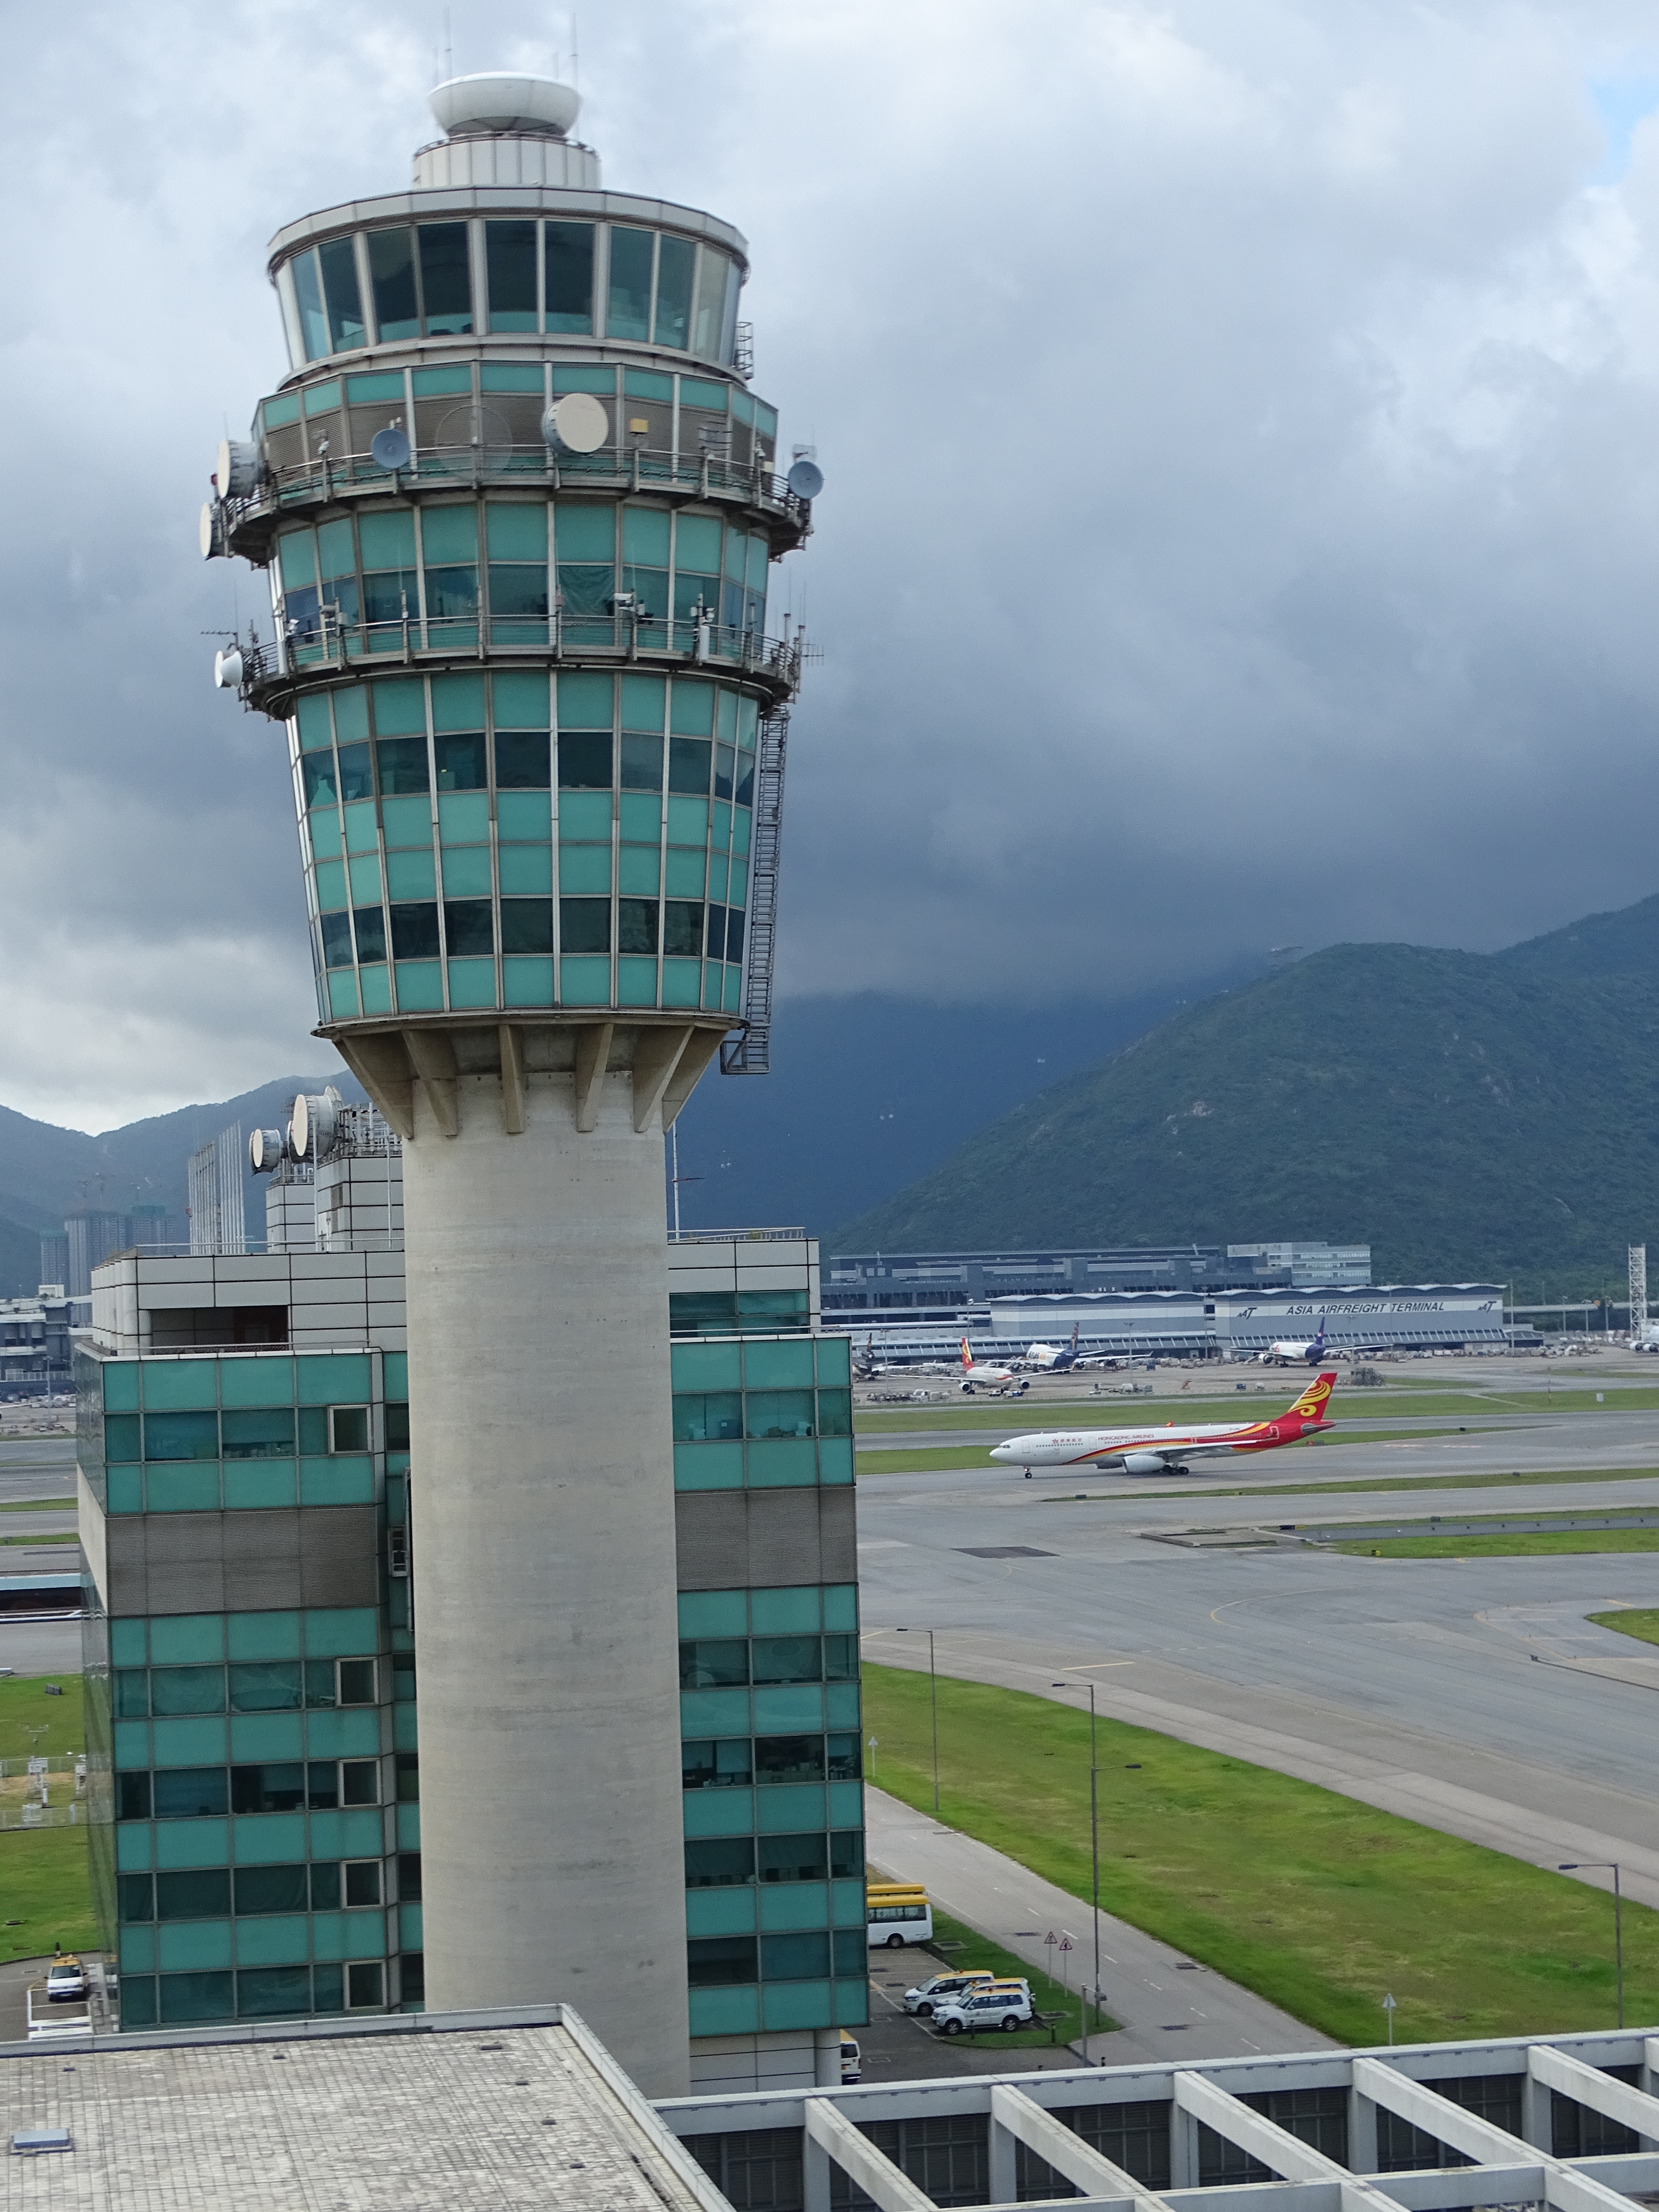 The main air traffic control tower